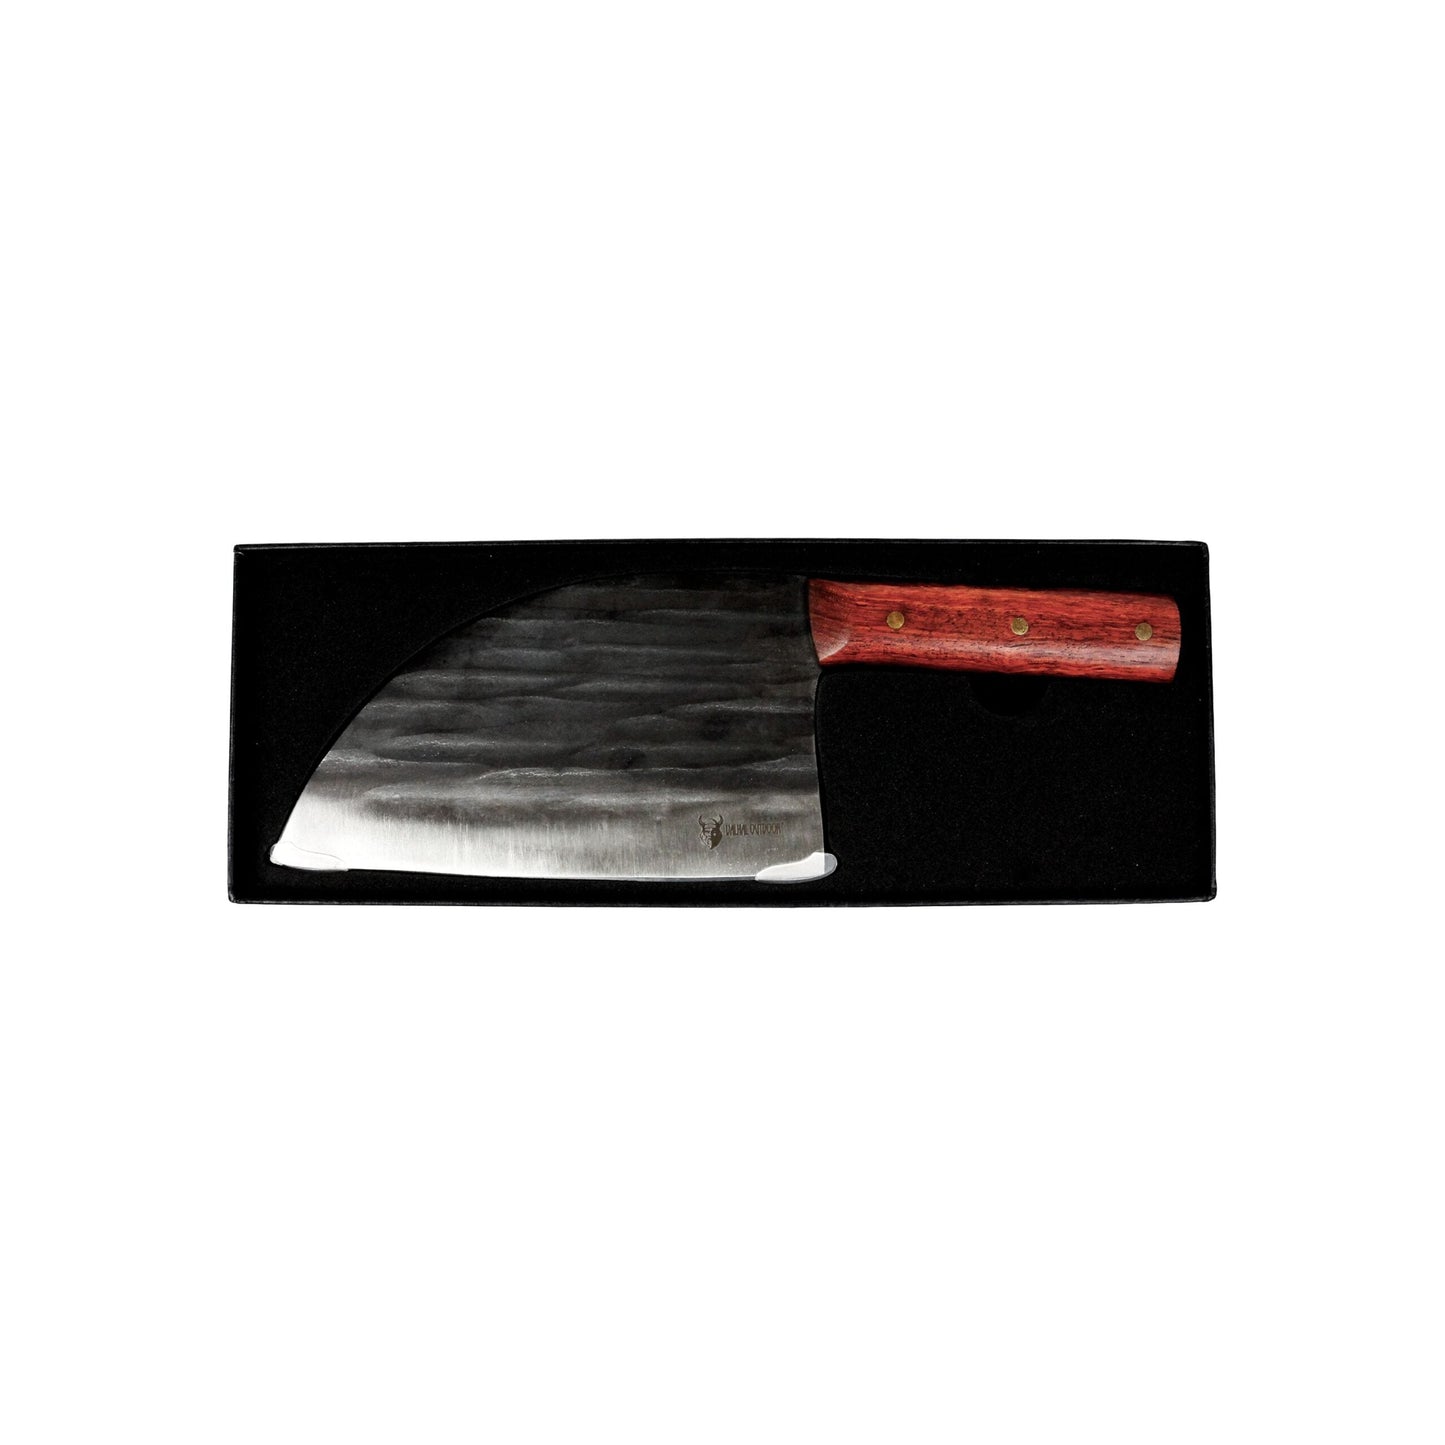 VH.KNIFE1 - HAKMES, LEMMET 18CM - MijnWoonplezier